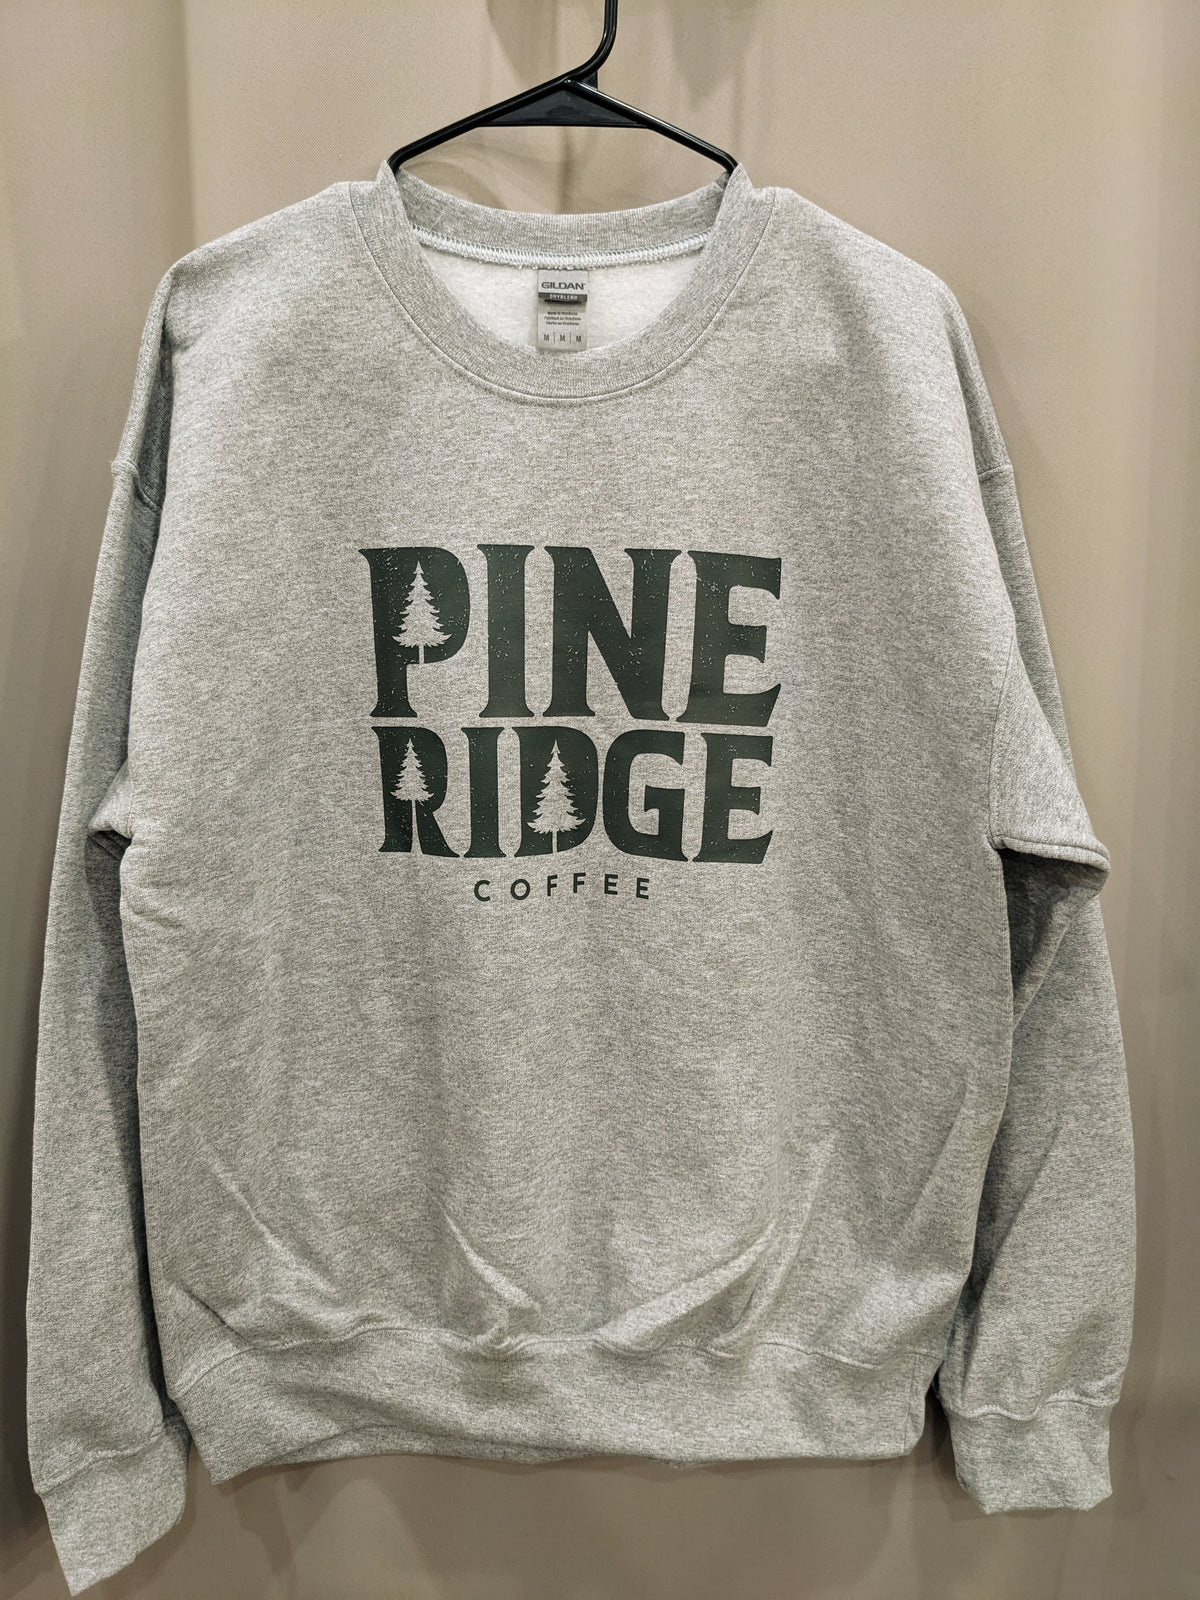 Pine Ridge Coffee crew neck